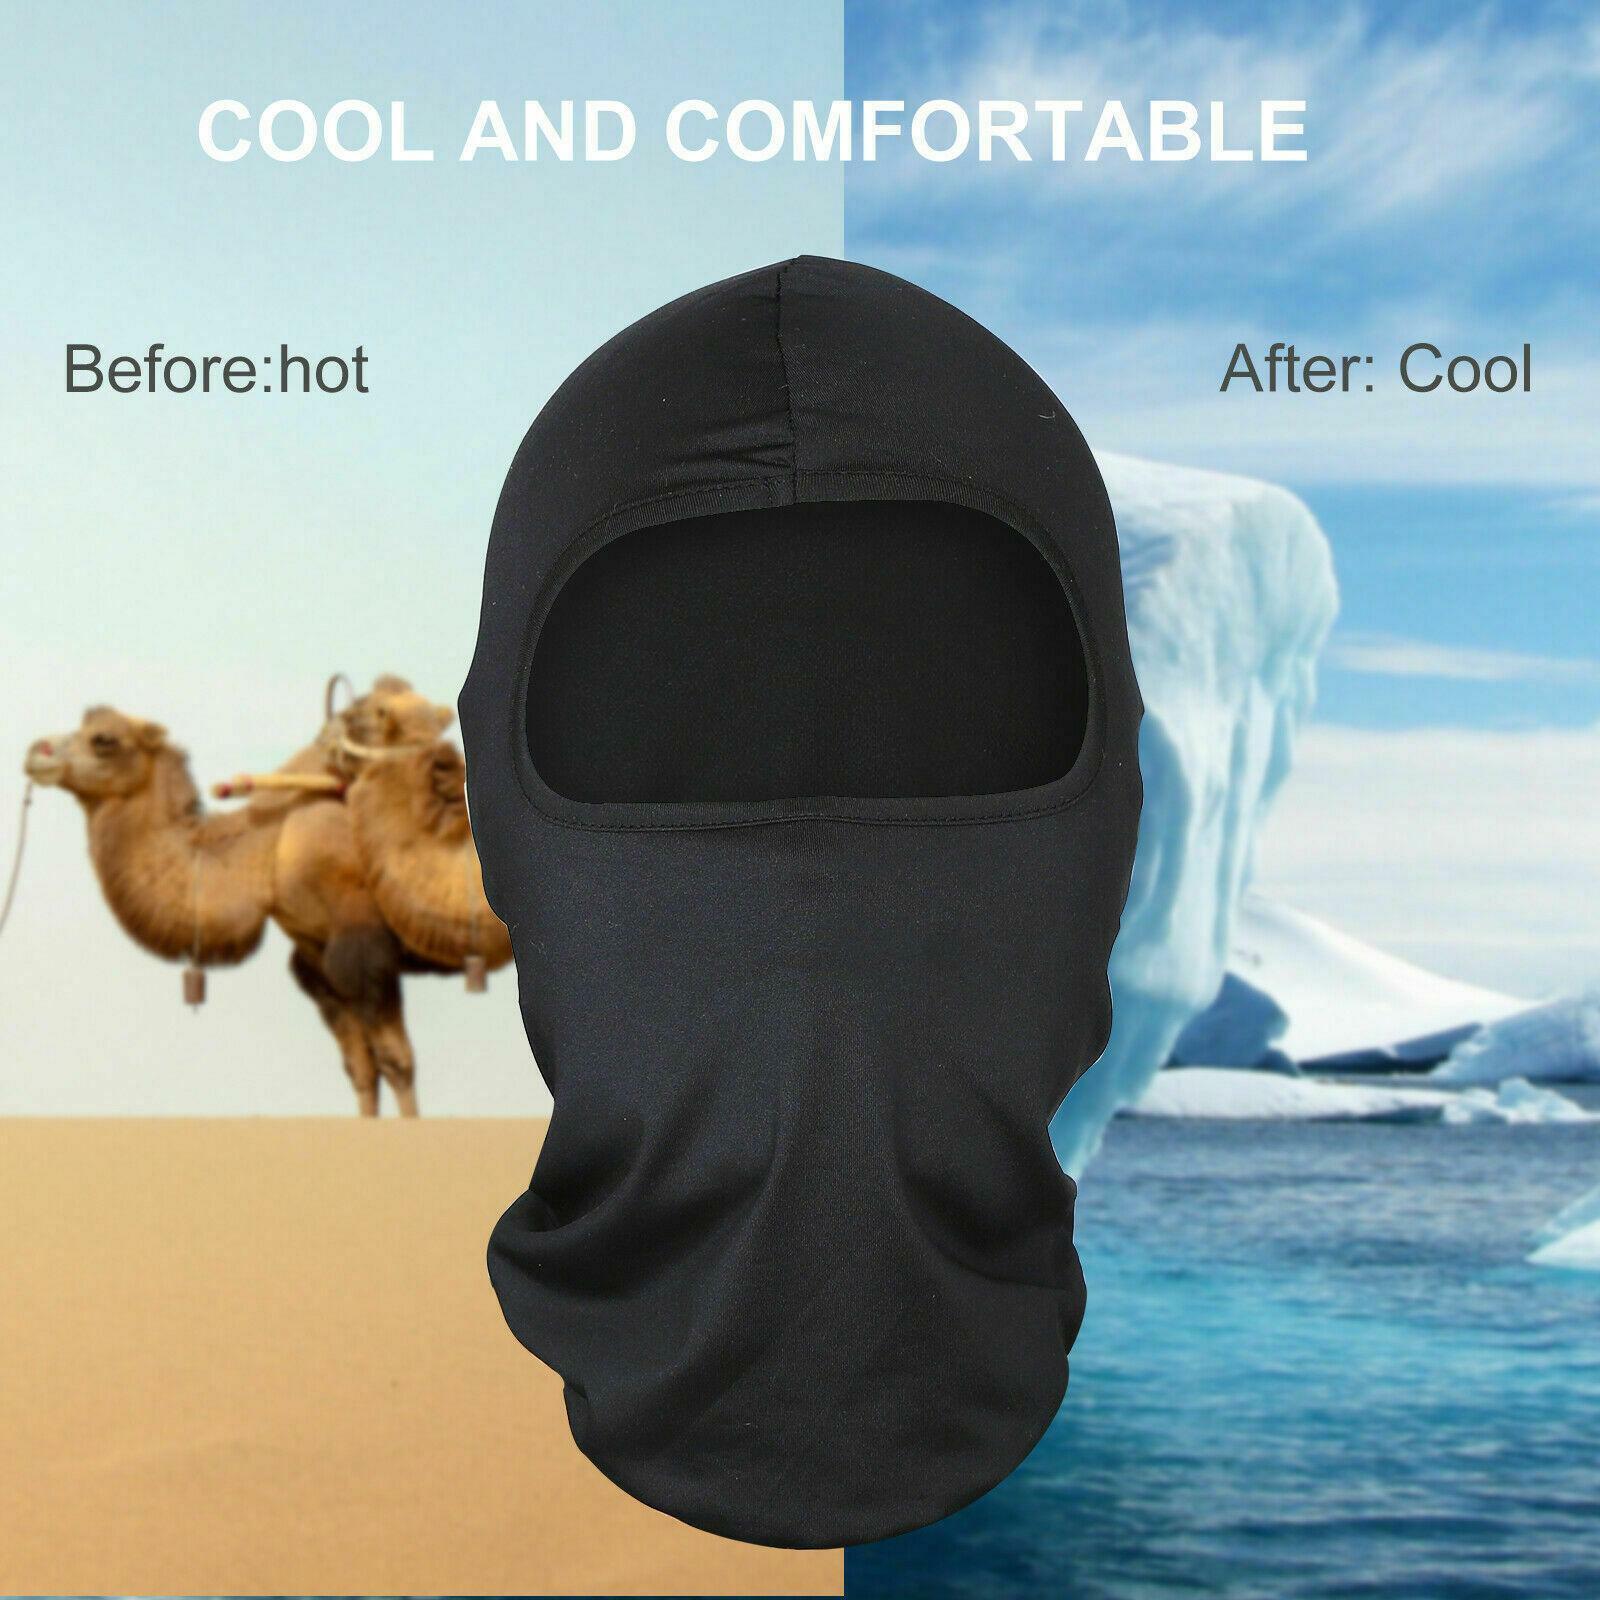 Pasamontañas Para El Frio Termico Calido Mascara De Proteccion Invierno Comodos Unbranded Does Not Apply - фотография #12